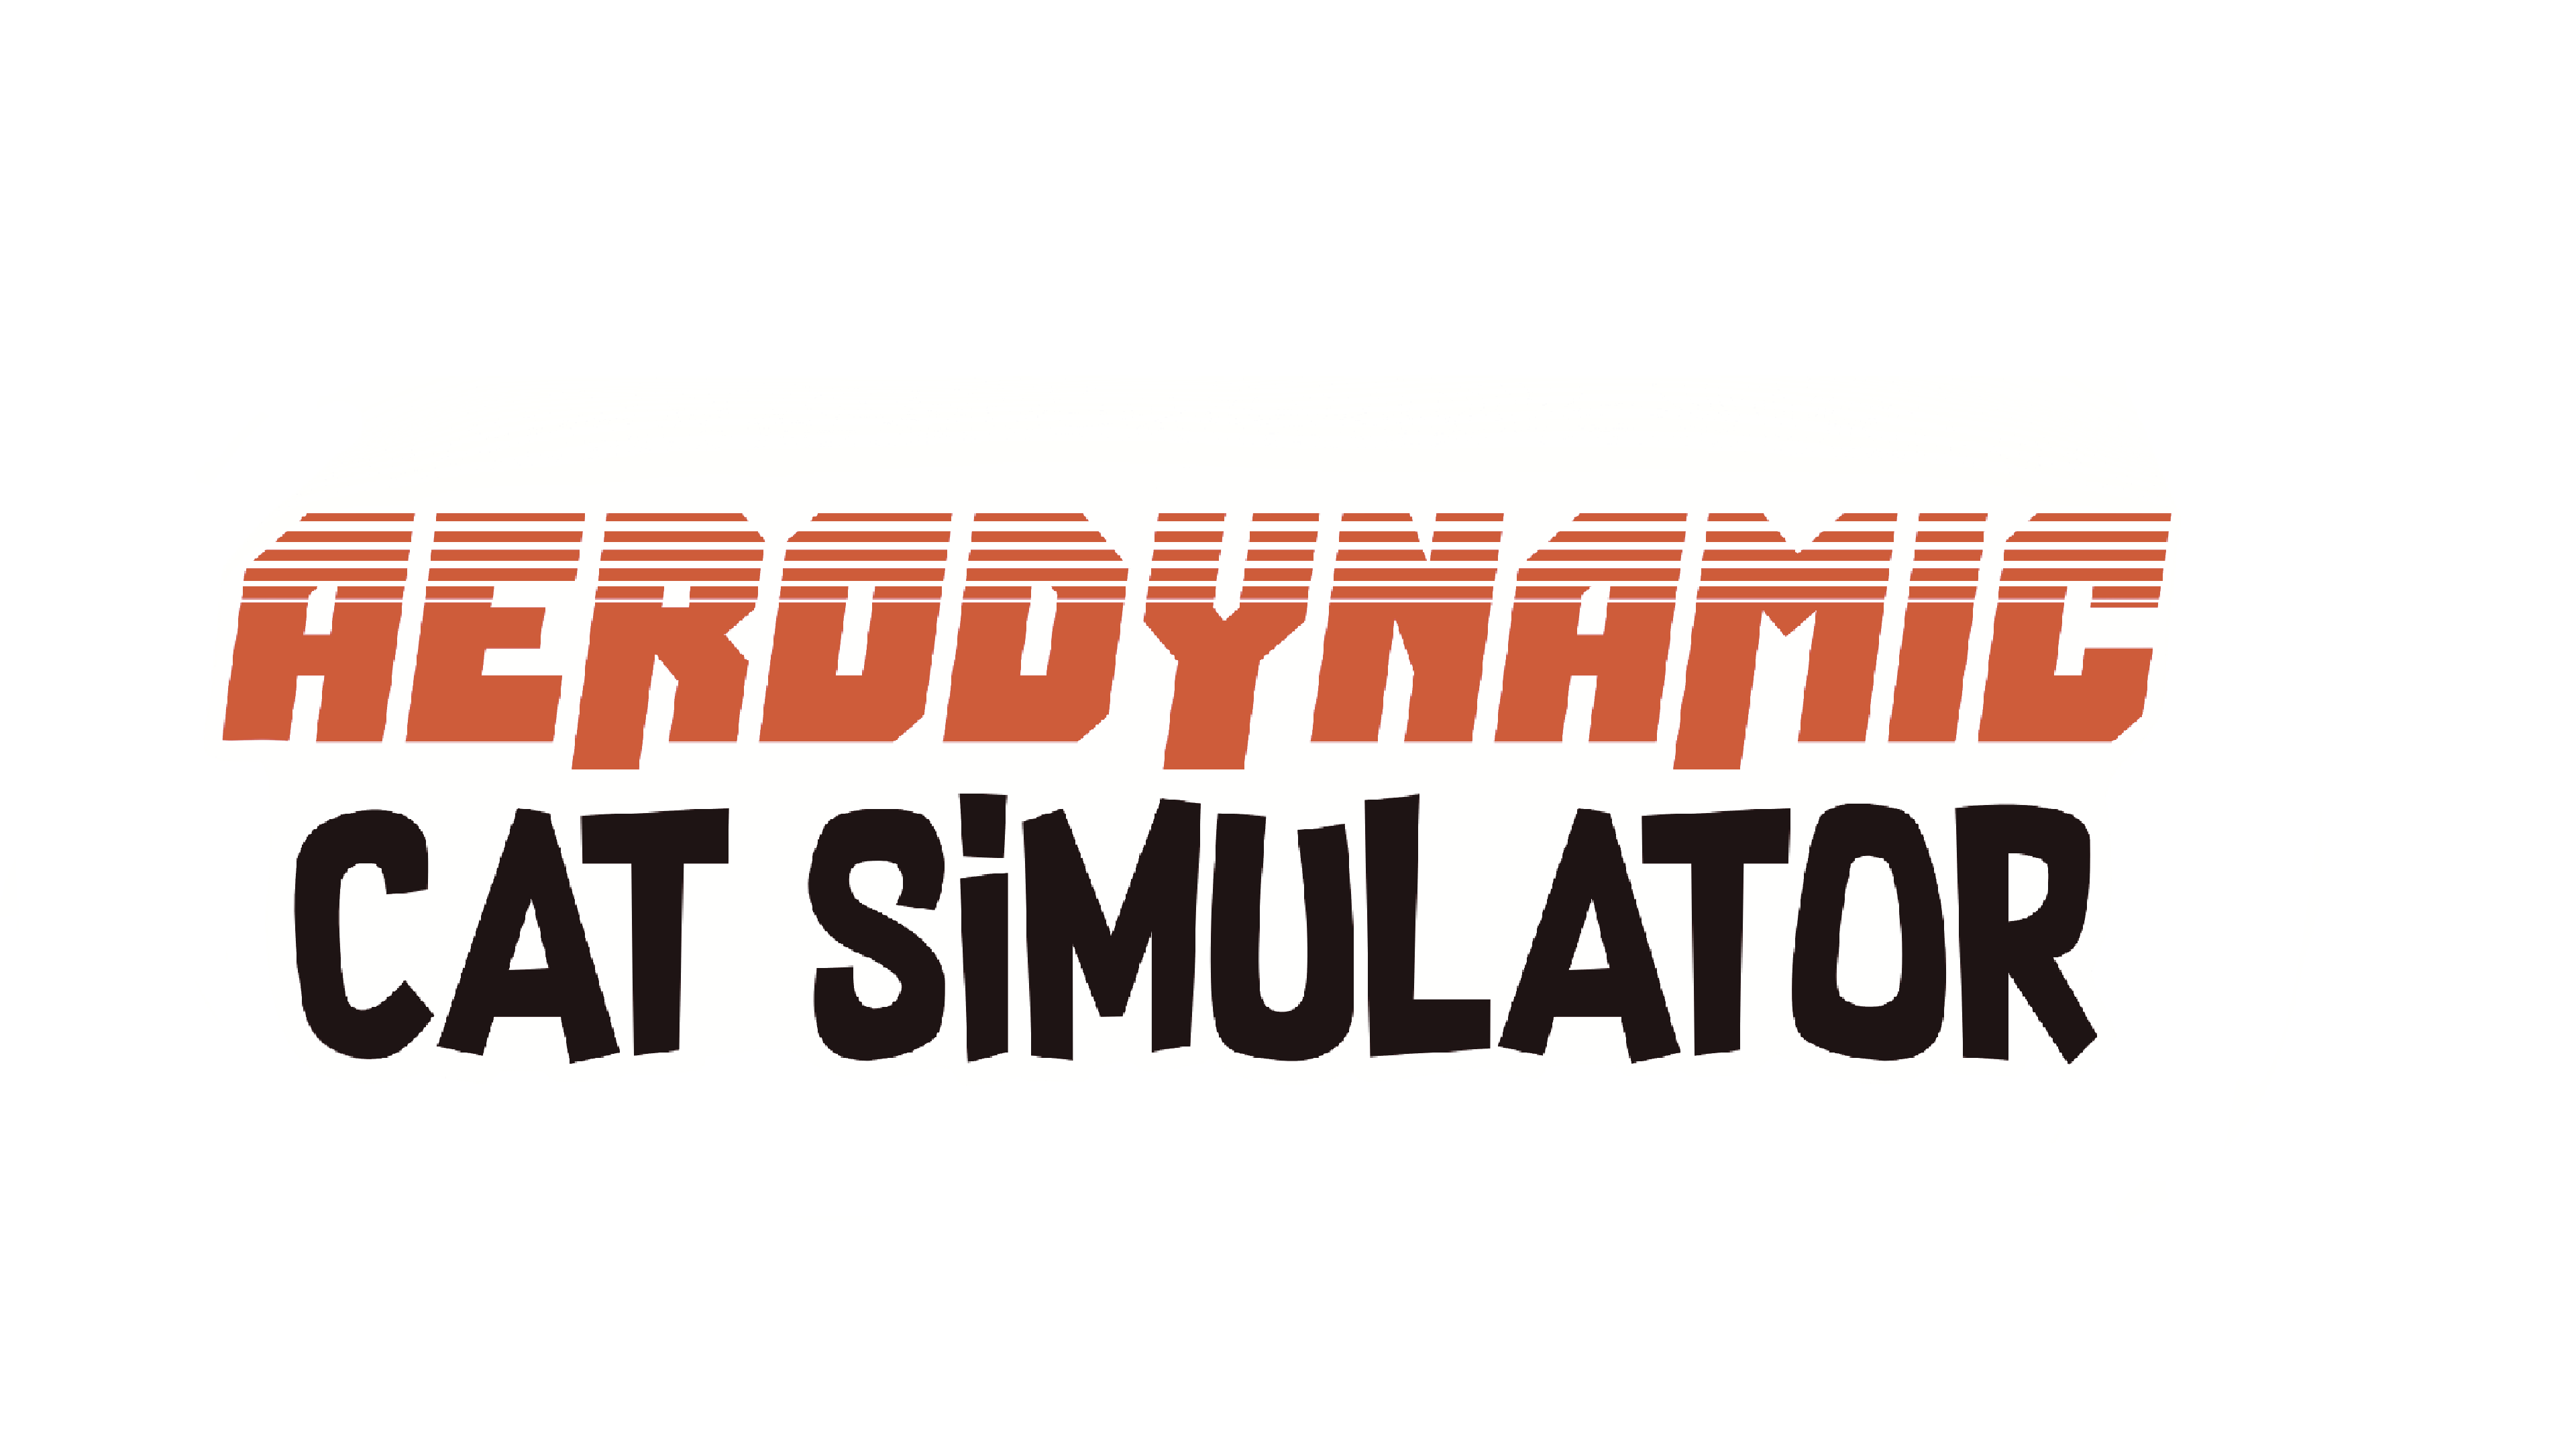 Aerodynamic Cat Simulator